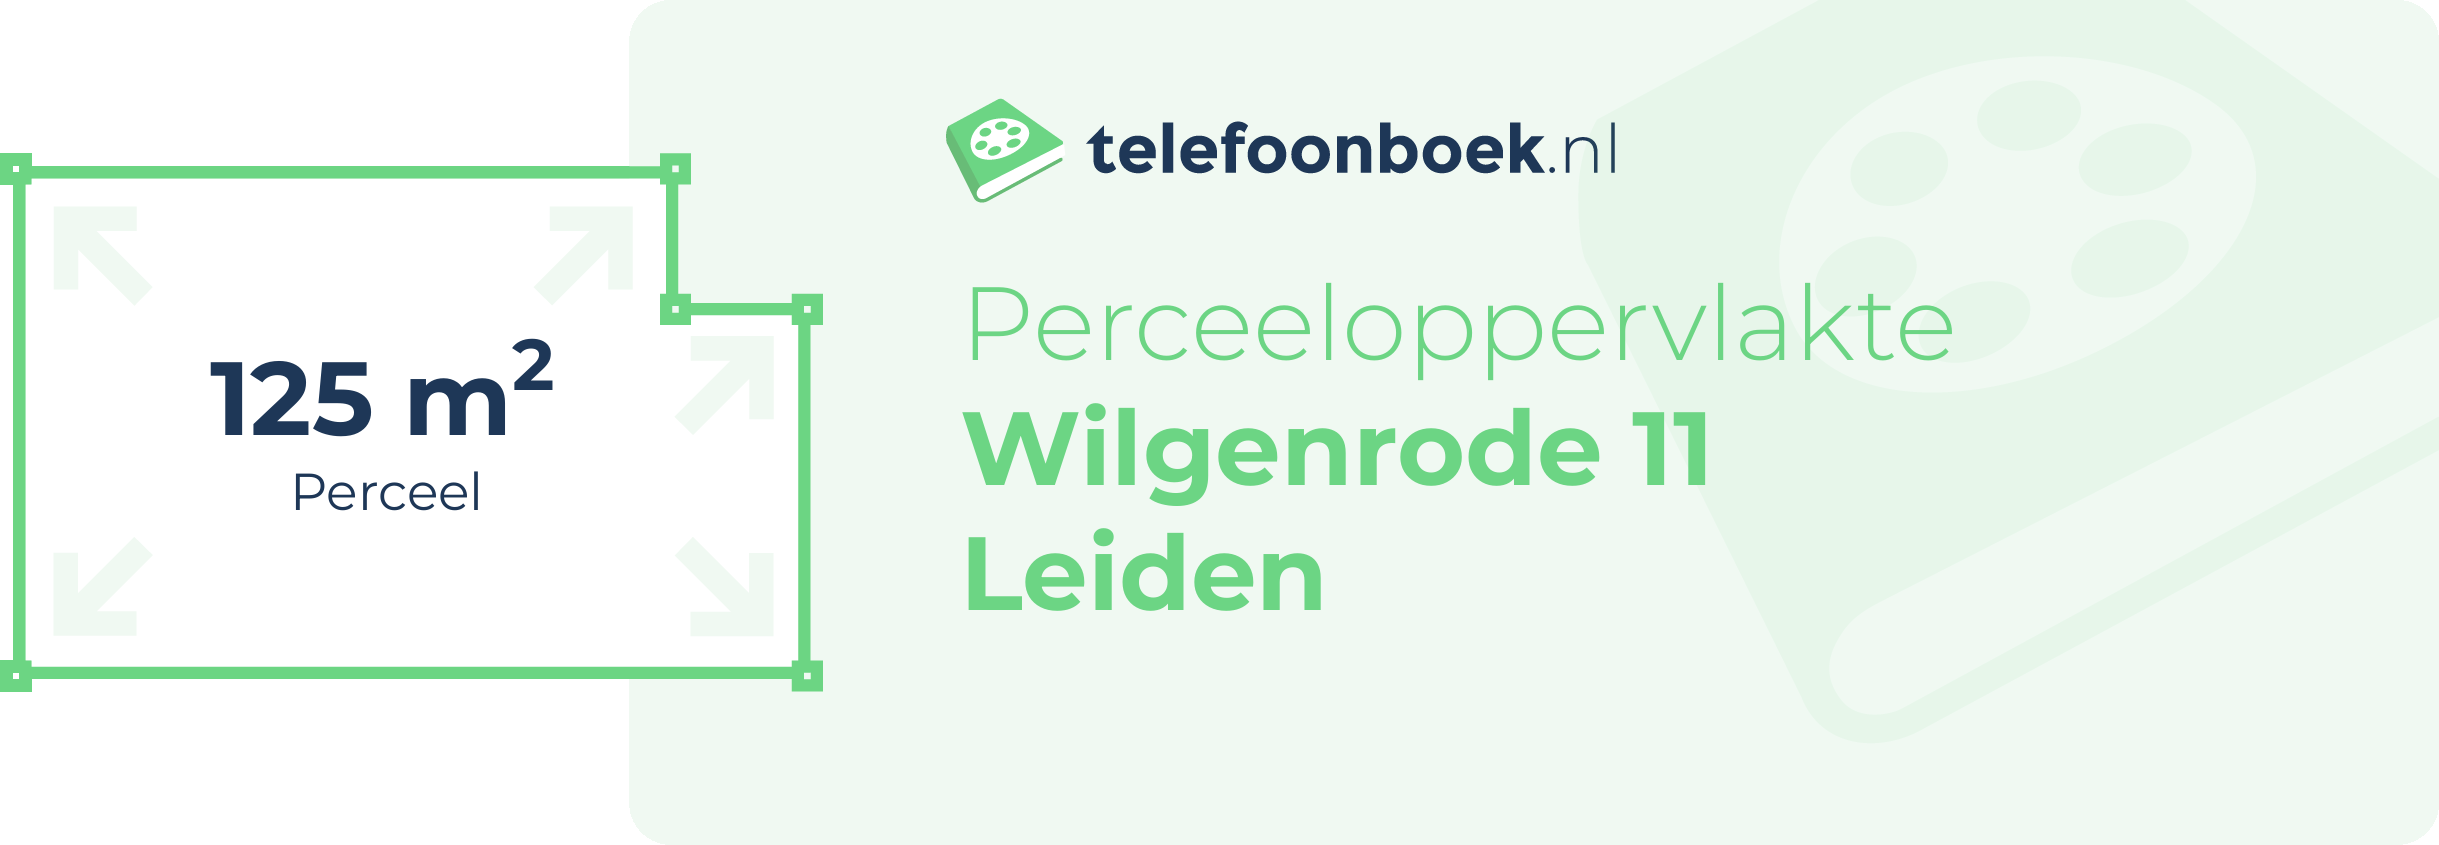 Perceeloppervlakte Wilgenrode 11 Leiden